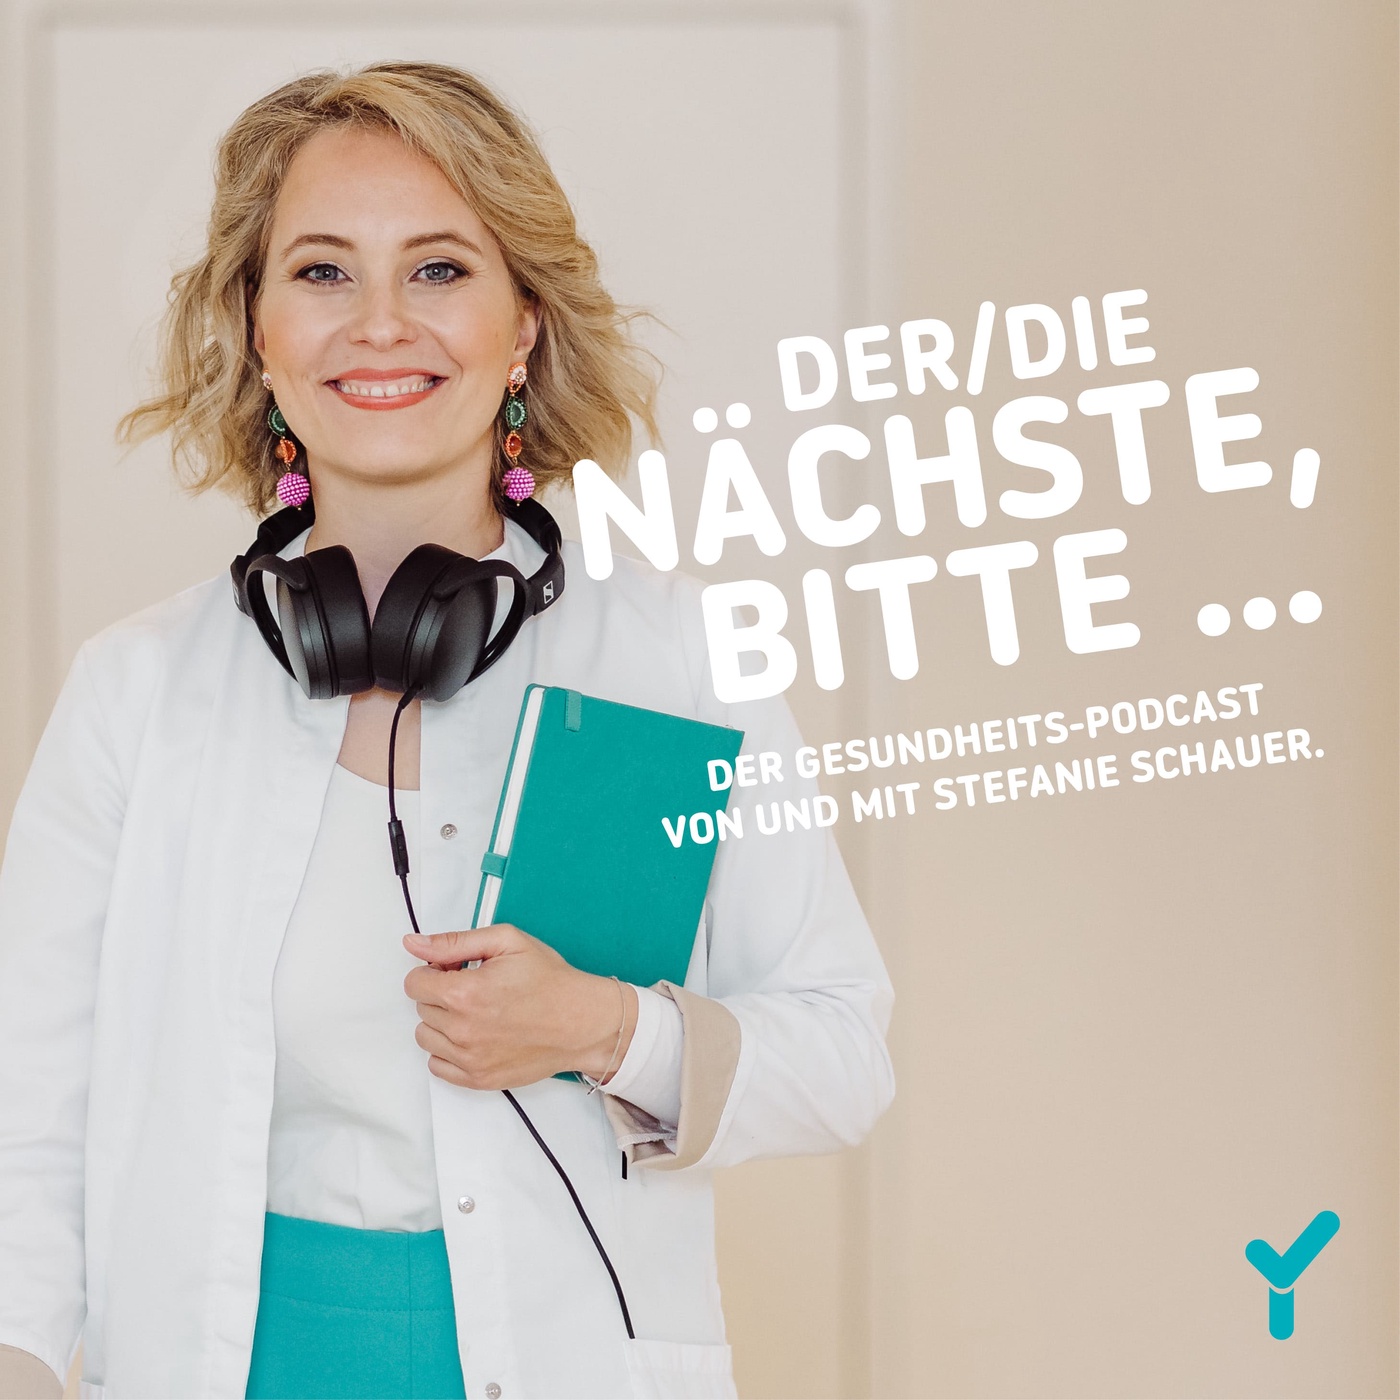 Der/Die Nächste, bitte… - der Gesundheits-Podcast von und mit Stefanie Schauer